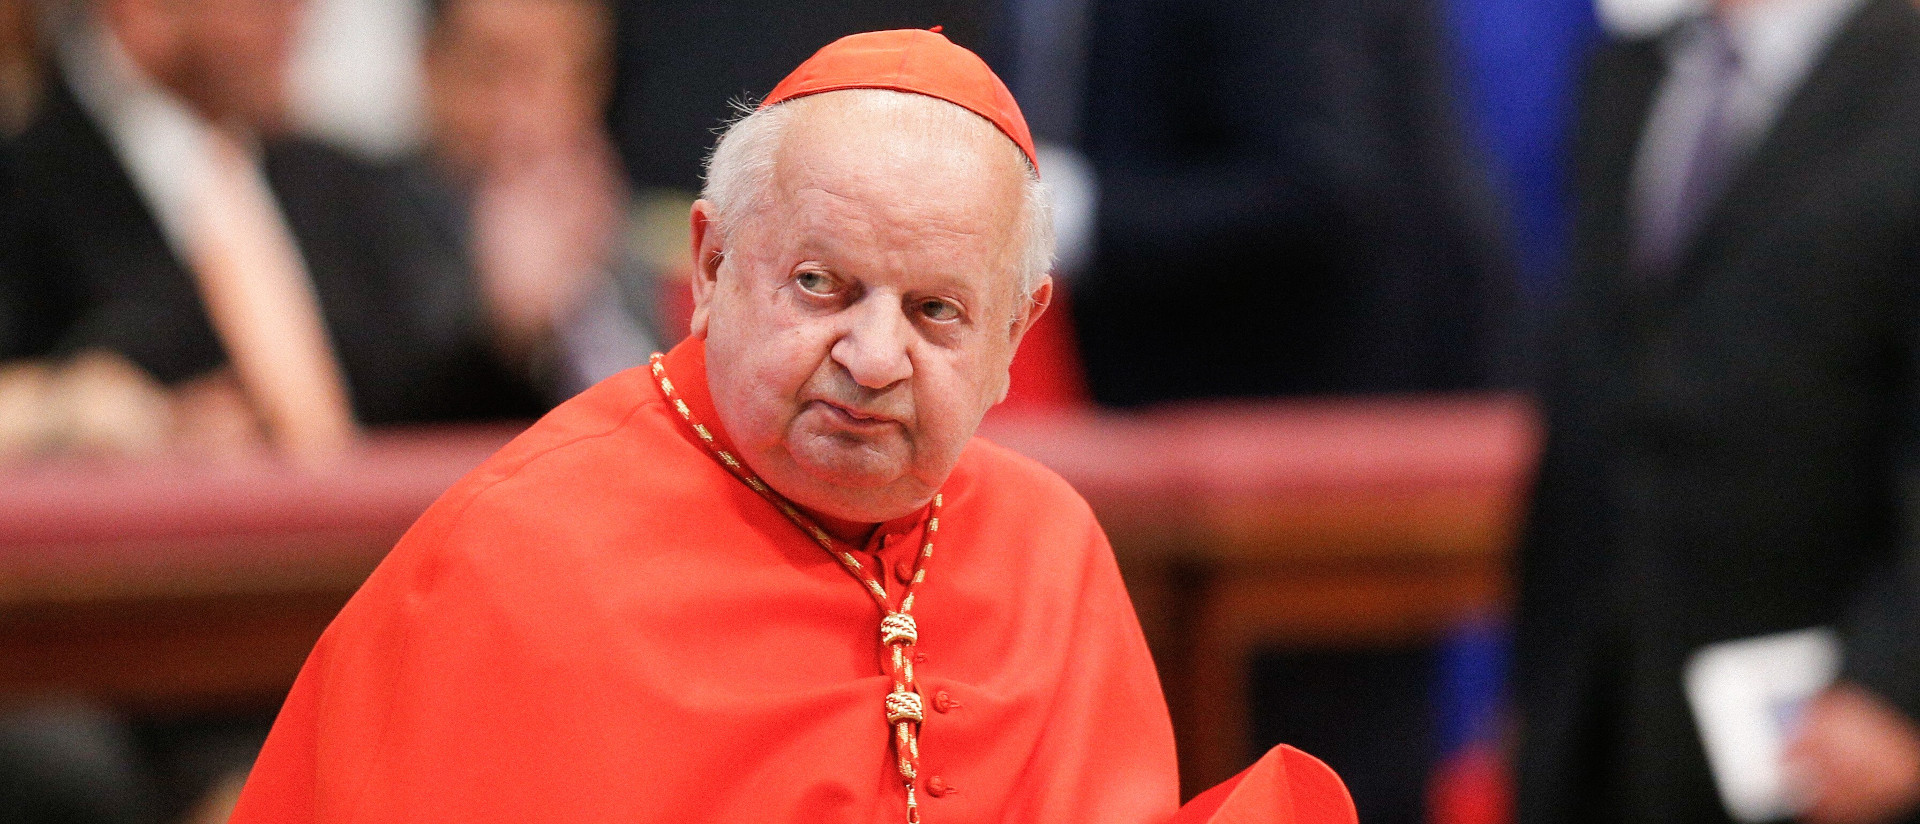 Kardinal Stanislaw Dziwisz, emeritierter Erzbischof von Krakau, am 28. Juni 2018 im Vatikan.